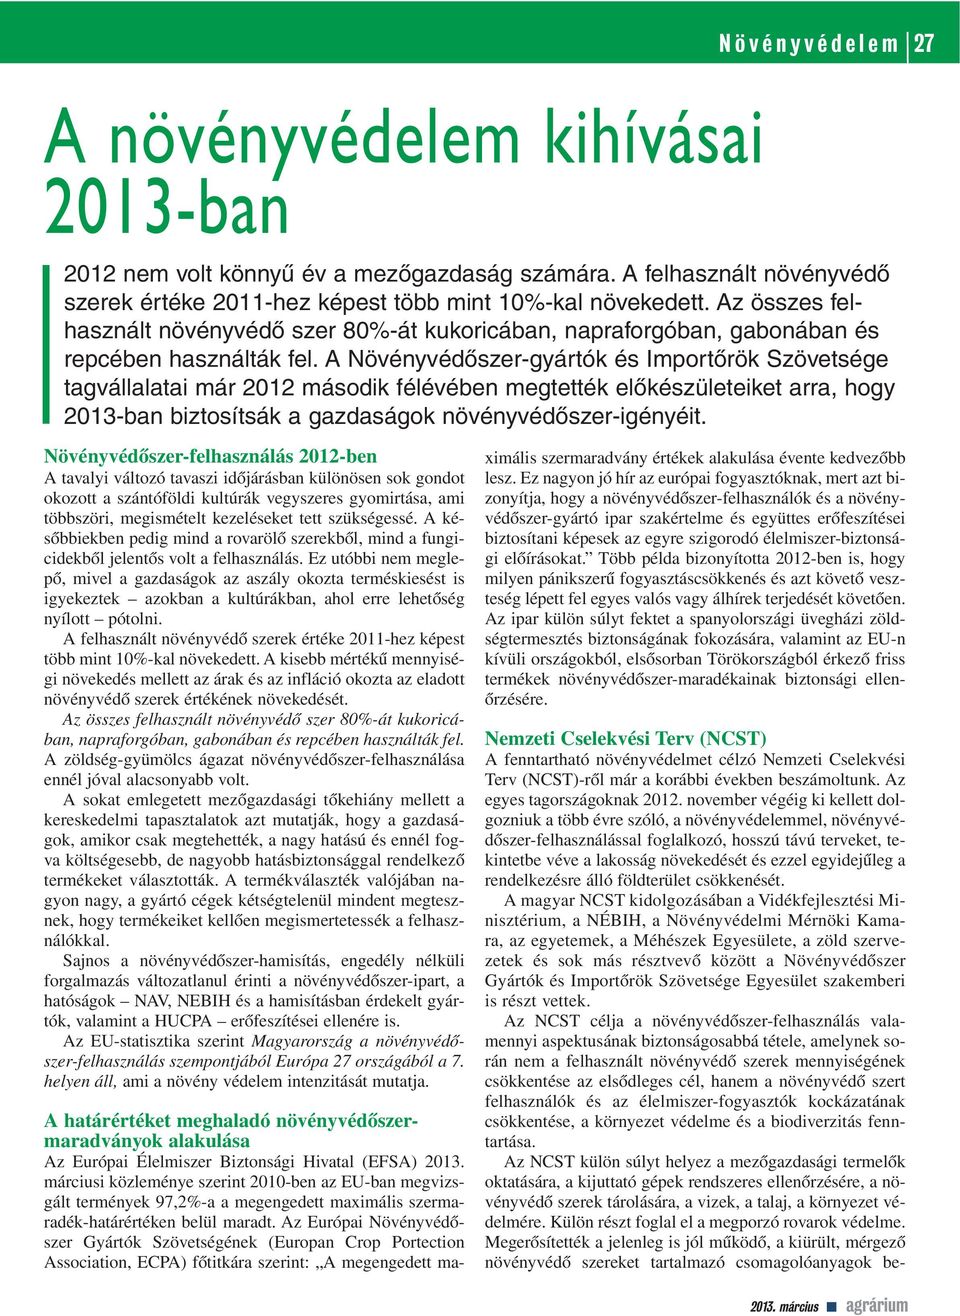 A Növényvédôszer-gyártók és Importôrök Szövetsége tagvállalatai már 2012 második félévében megtették elôkészületeiket arra, hogy 2013-ban biztosítsák a gazdaságok növényvédôszer-igényéit.